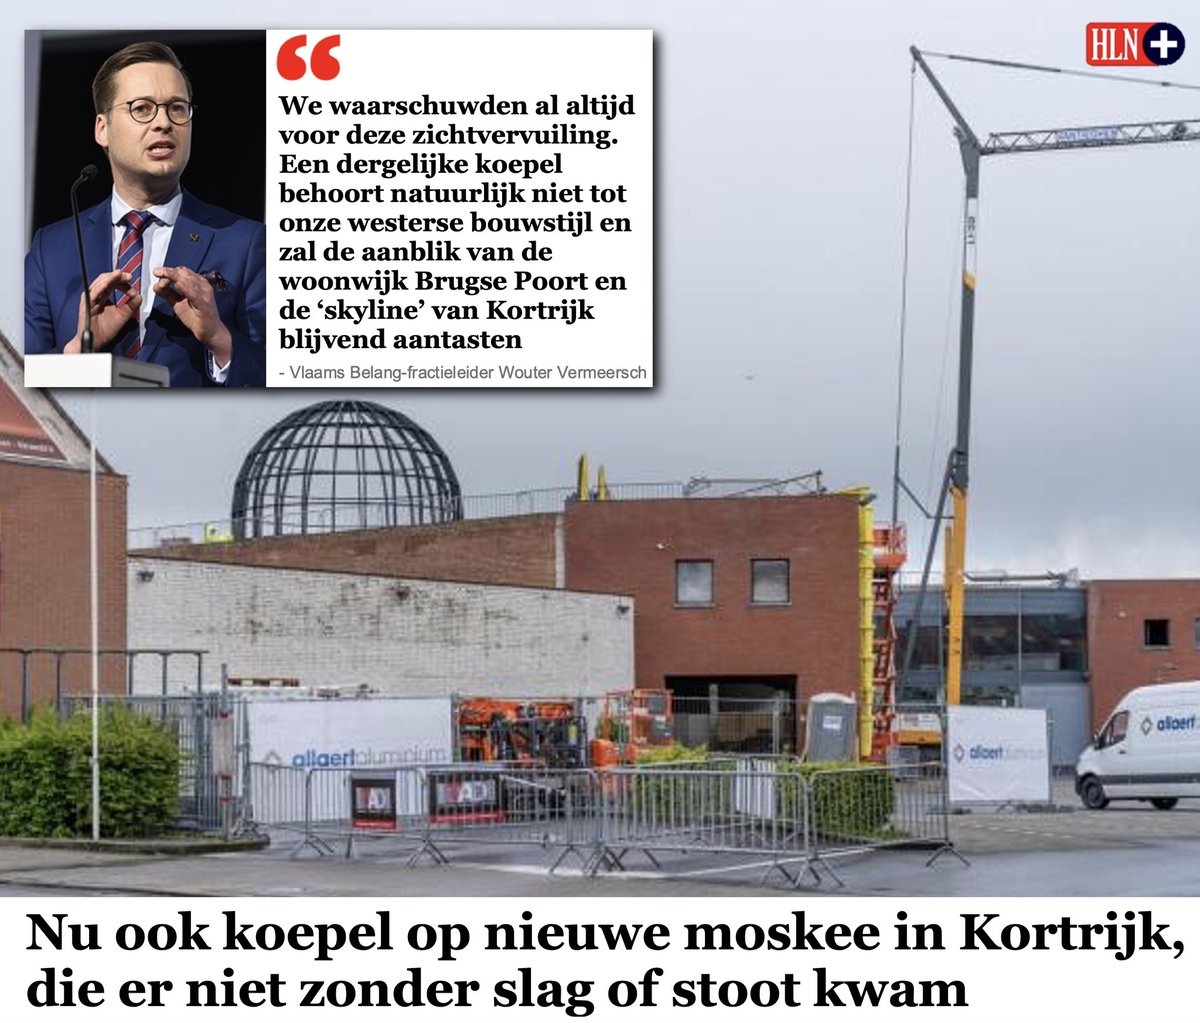 Die mega-moskee hoort daar niet. Nu niet. Nooit niet!

Lees het betalend artikel hier 👉
hln.be/kortrijk/nu-oo…

#VlaamsBelang #Kortrijk #GrKortrijk